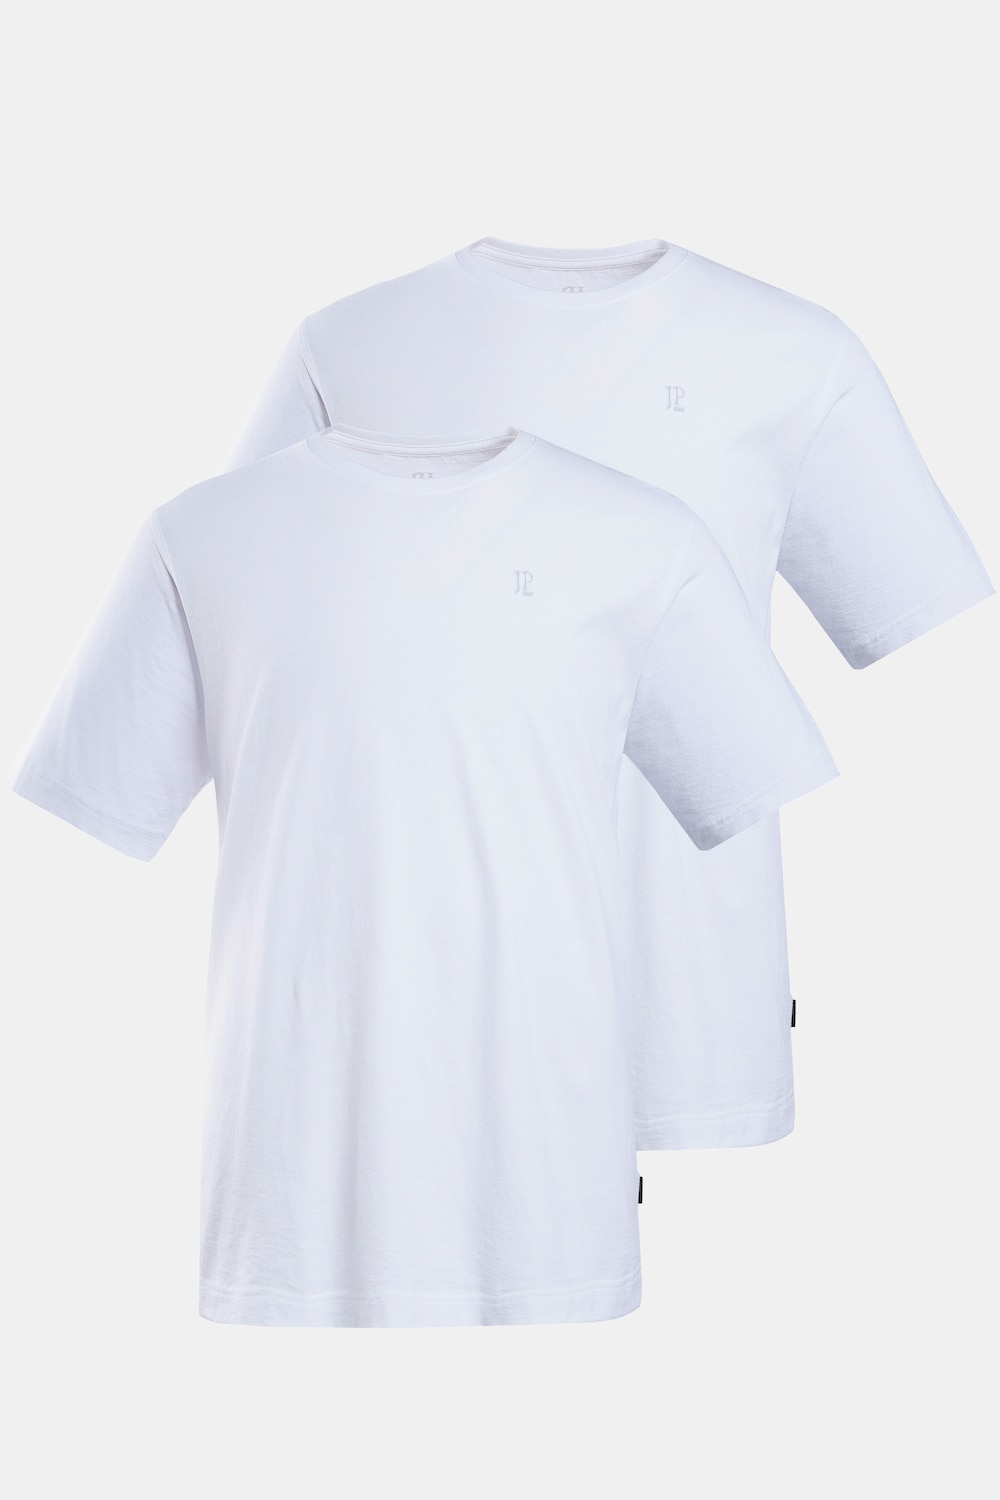 Große Größen T-Shirts, Herren, weiß, Größe: 4XL, Baumwolle, JP1880